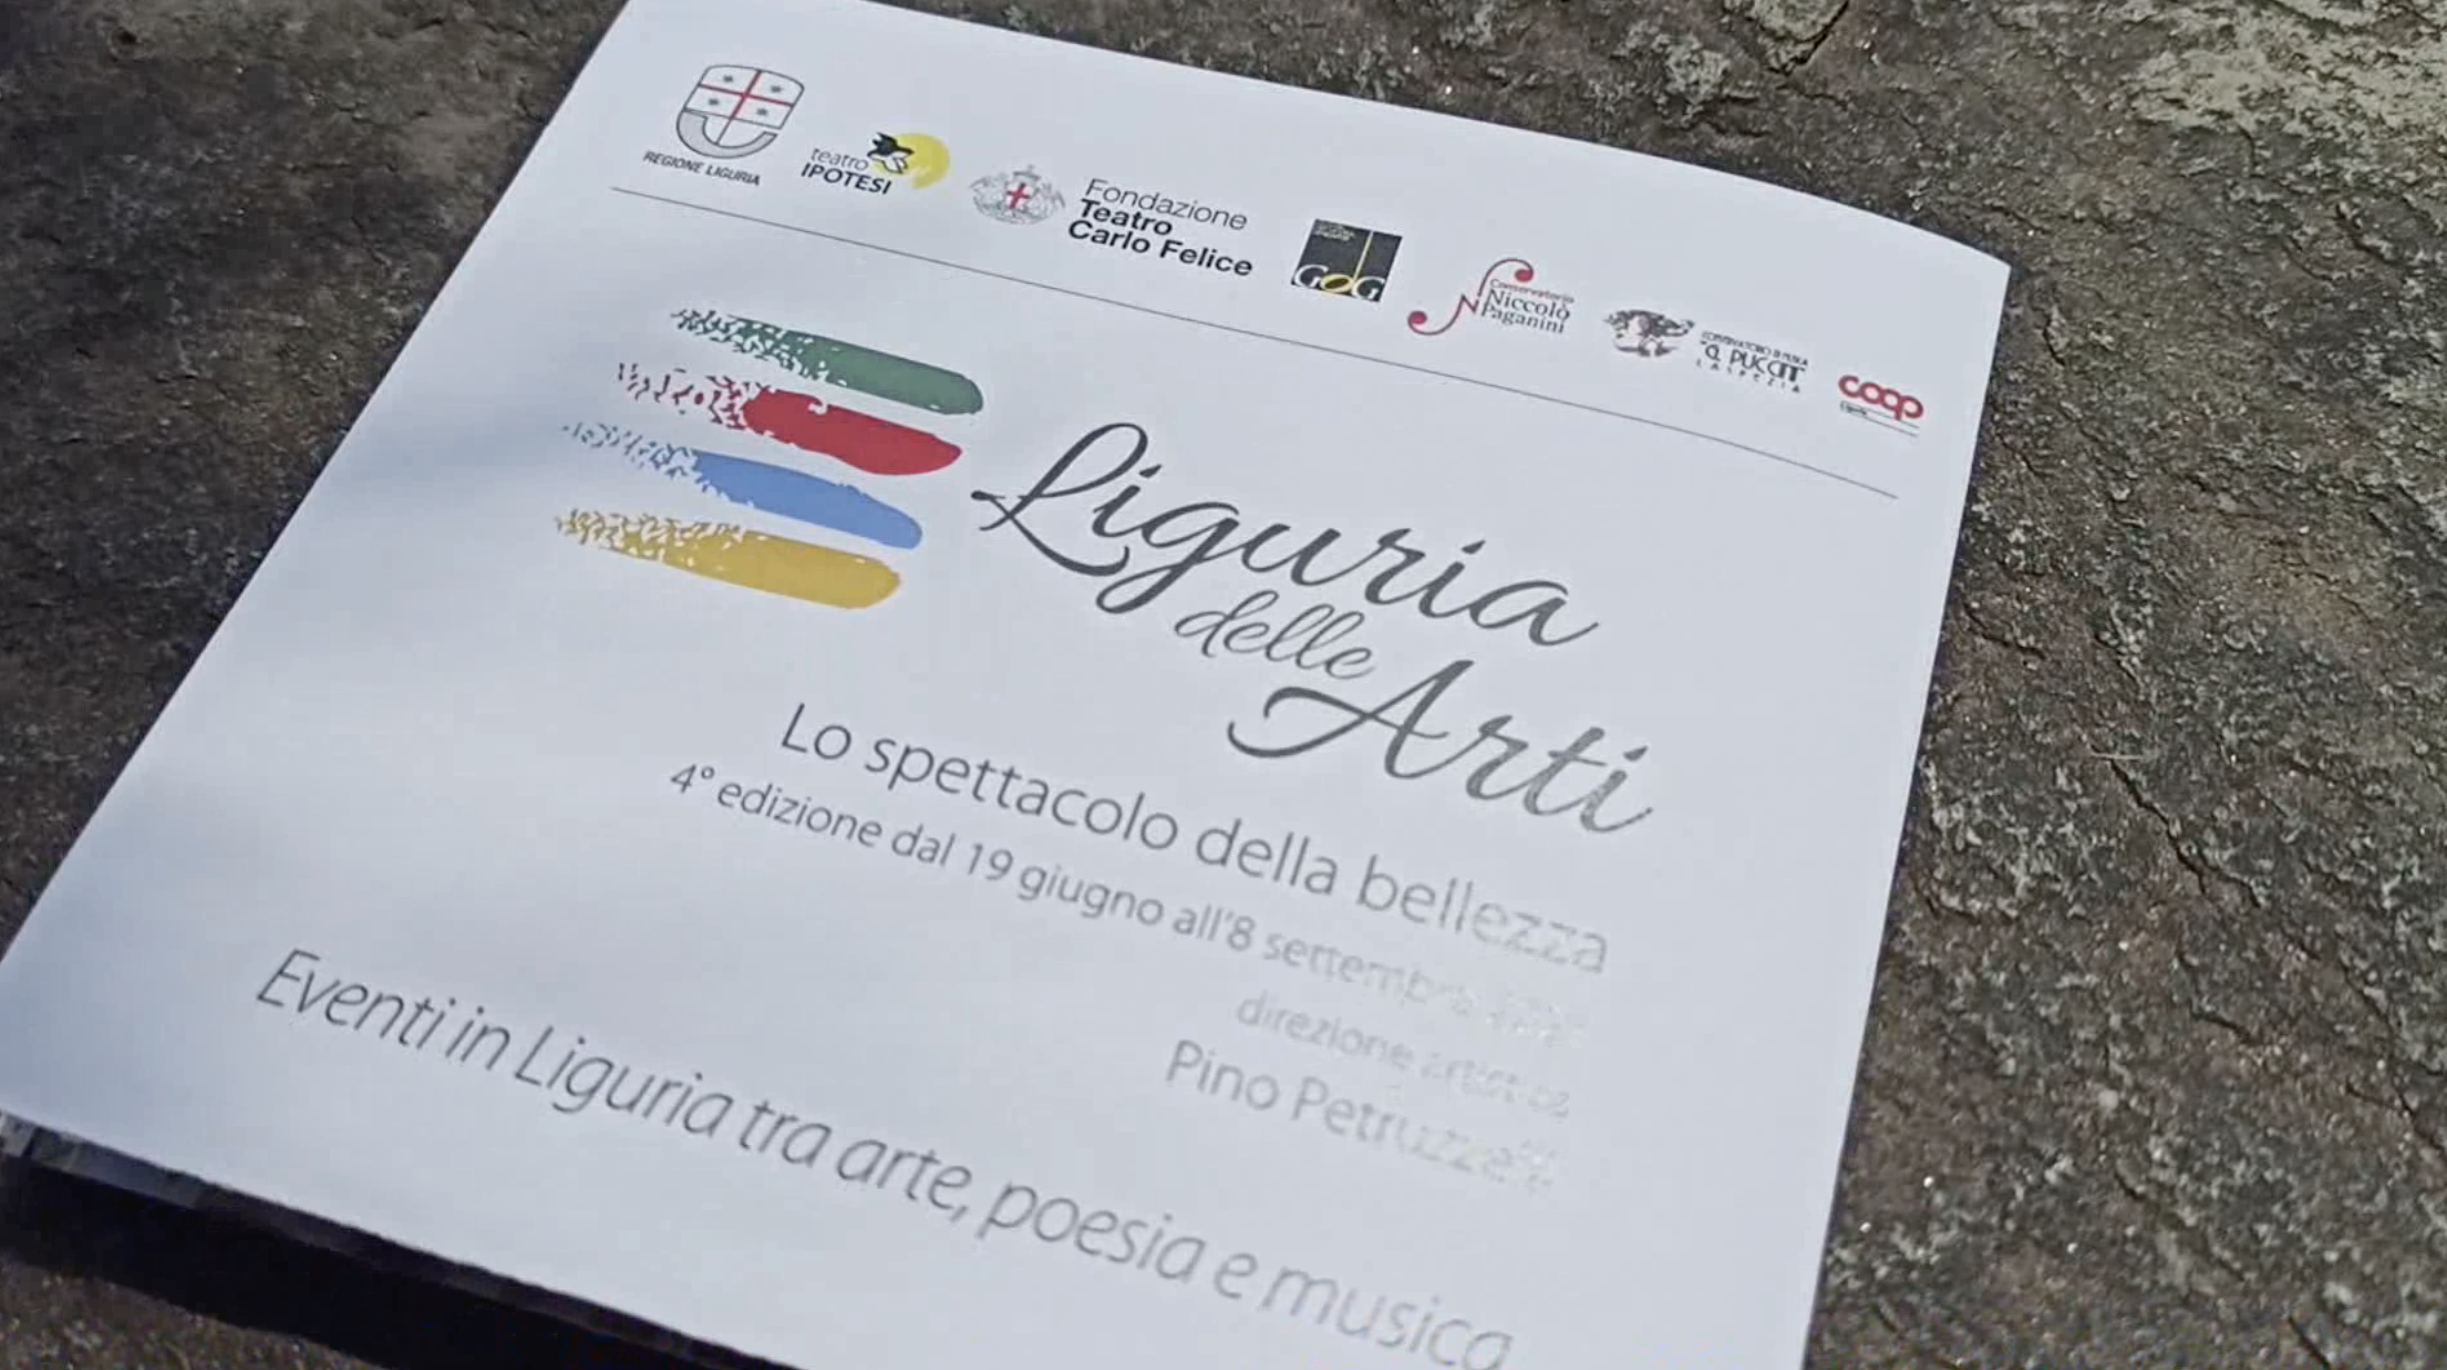 Il 19 giugno parte la nuova edizione di "Liguria delle Arti"